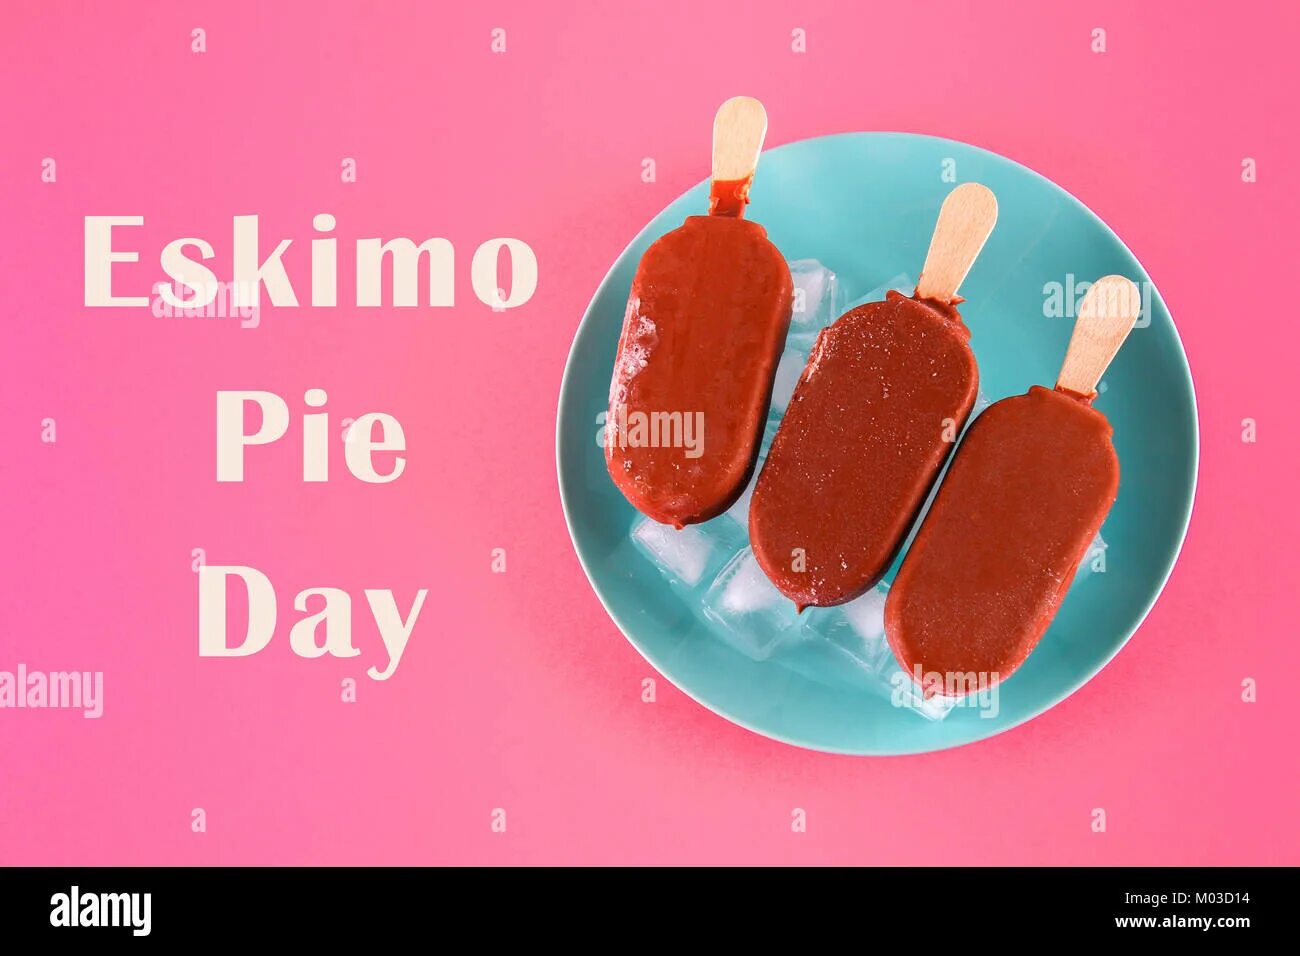 Eskimo pie Day. International Eskimo pie Day. Мороженое эскимо Пай. День эскимо в детском саду. Прилагательные к слову эскимо